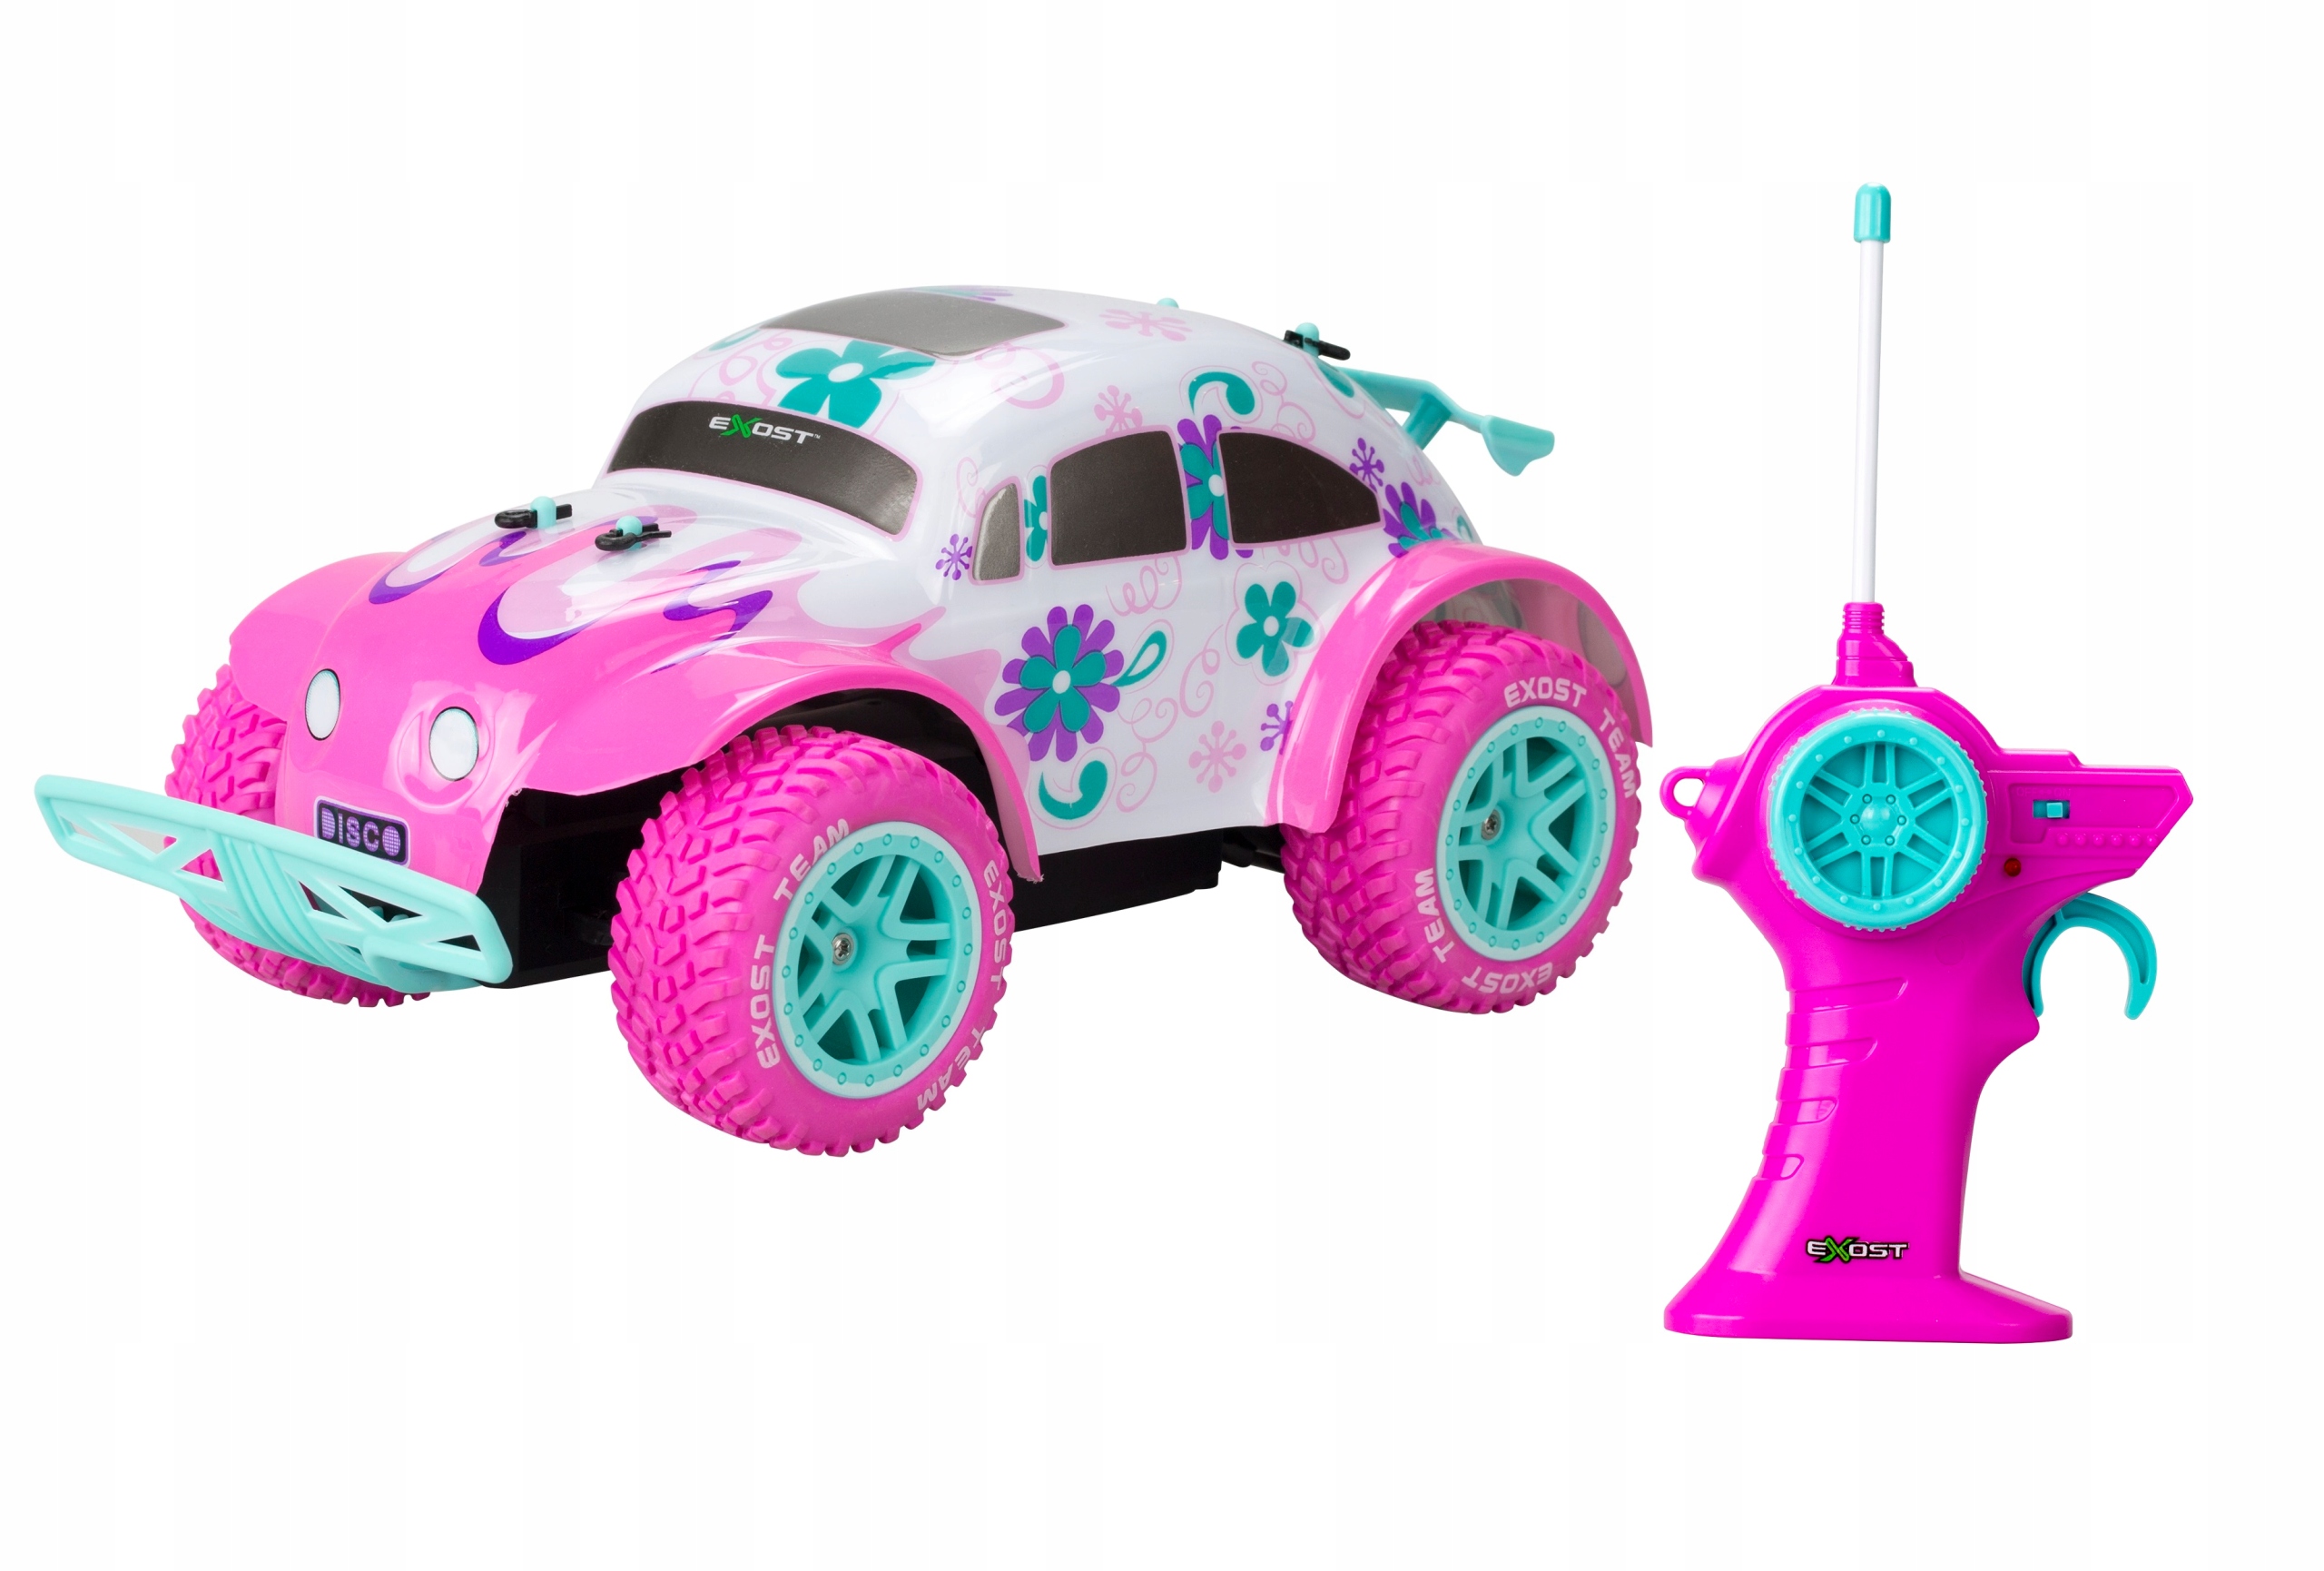 Amazon - Zabawki dla dzieci - dziewczynek i chłopców - sklep internetowy -  Allegro.pl